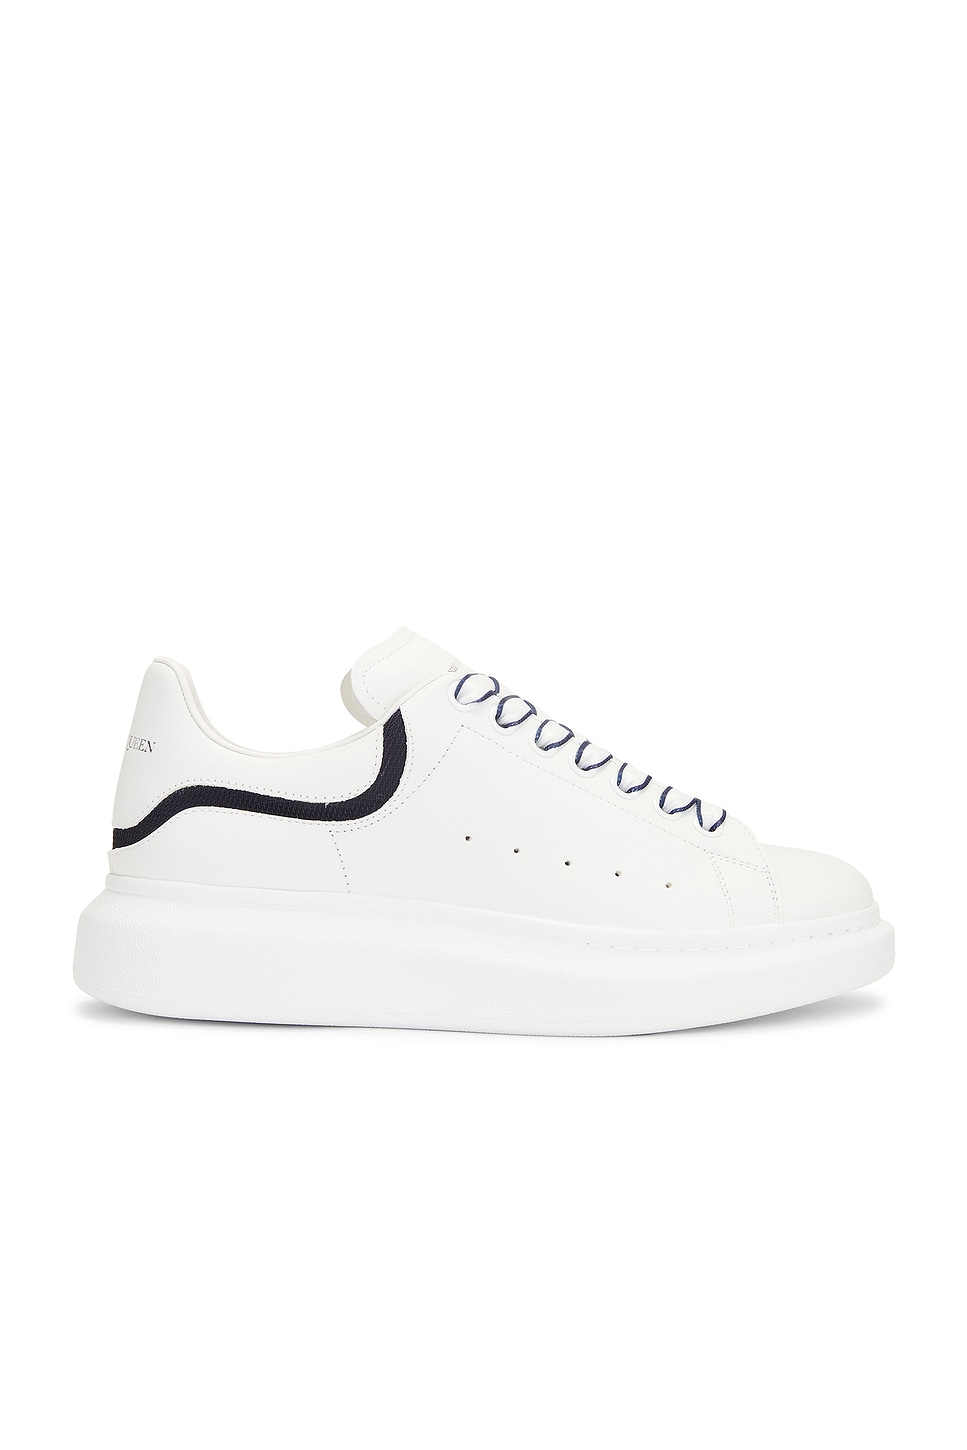 Image 1 of Alexander McQueen Low Top Sneaker in White & Navy